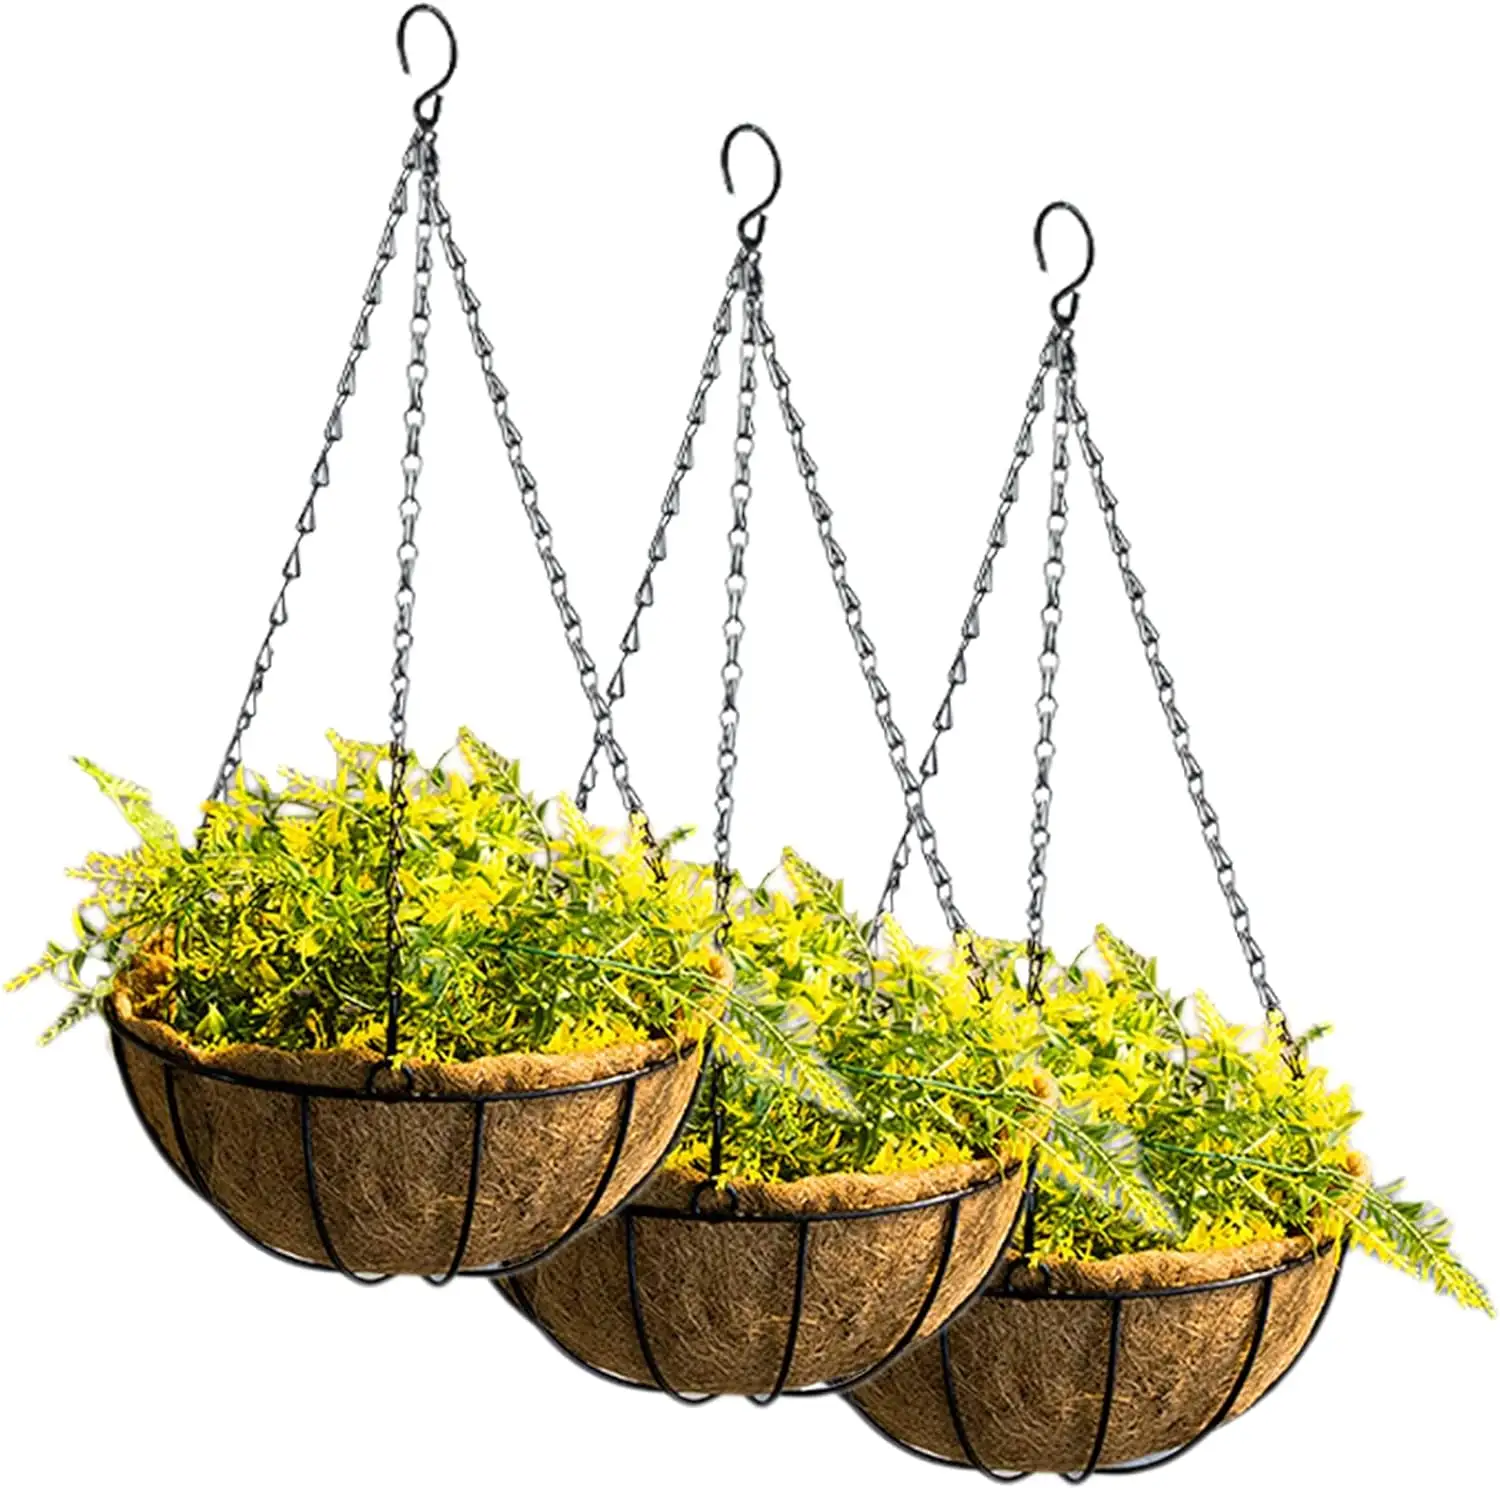 YULIN JIAFU 10 "Pots de fleurs suspendus en métal jardinières suspendues panier de plantes avec doublures en fibre de coco